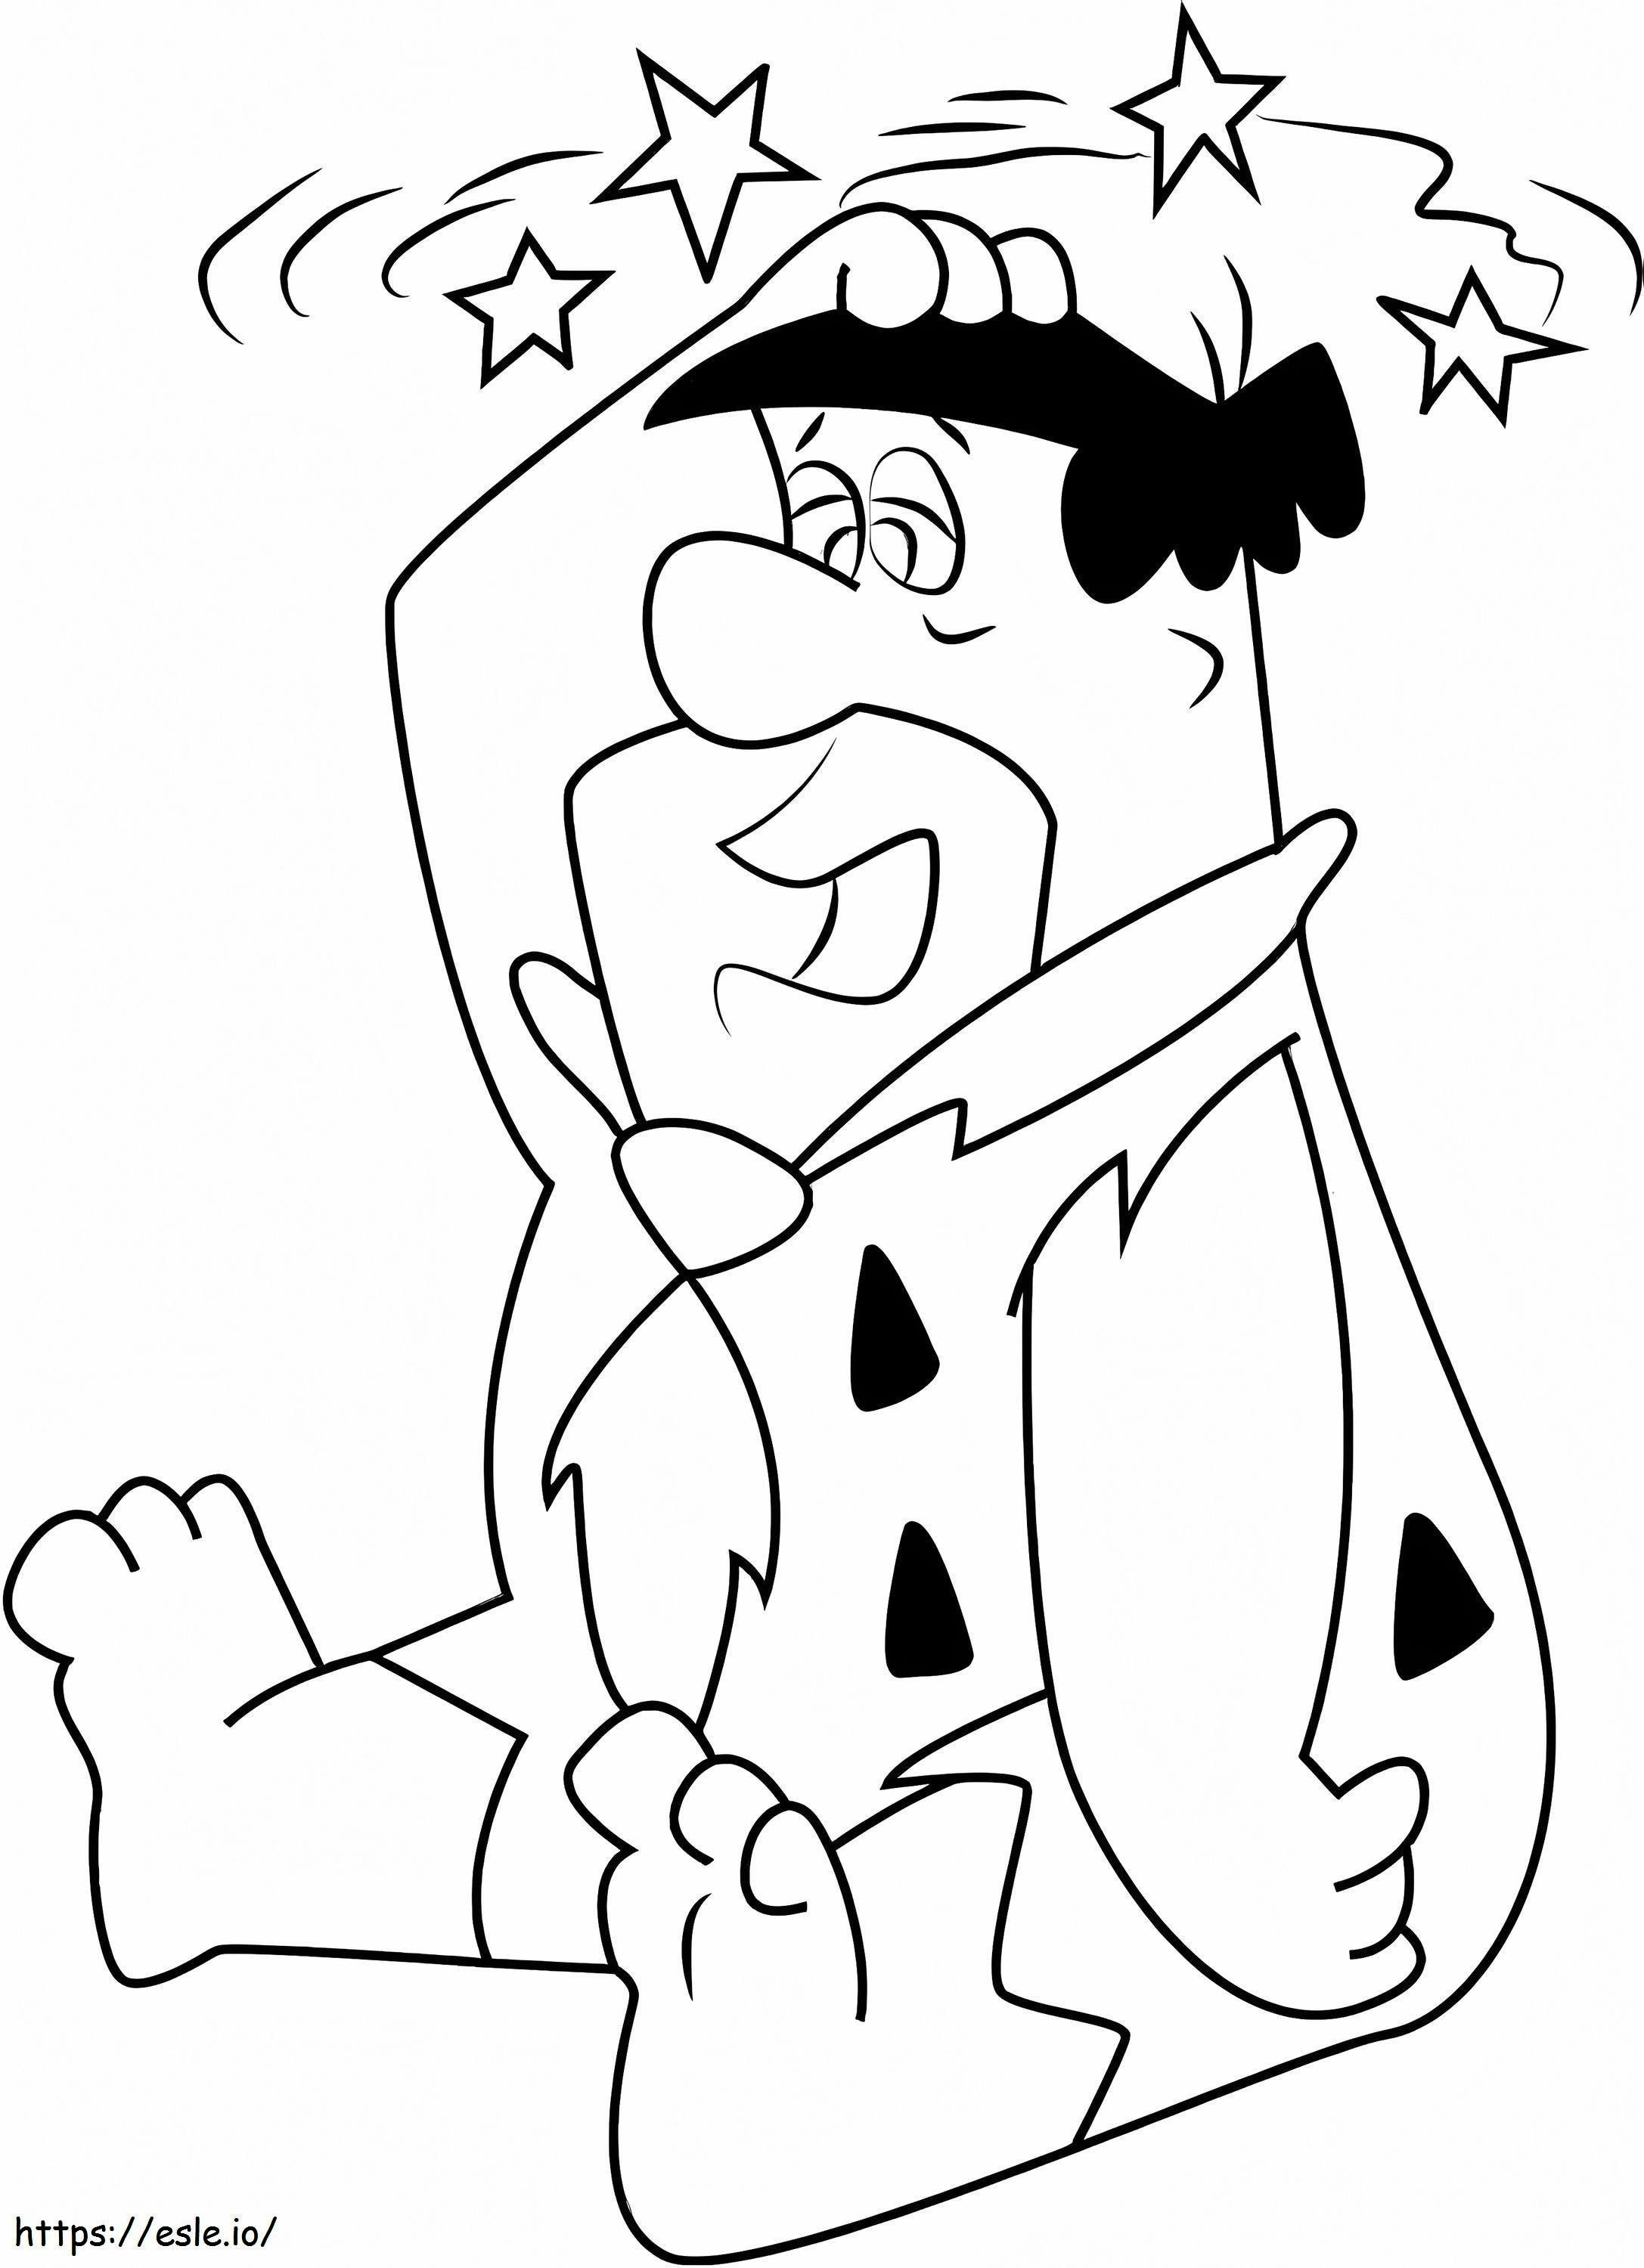 Fred Flintstone kolorowanka